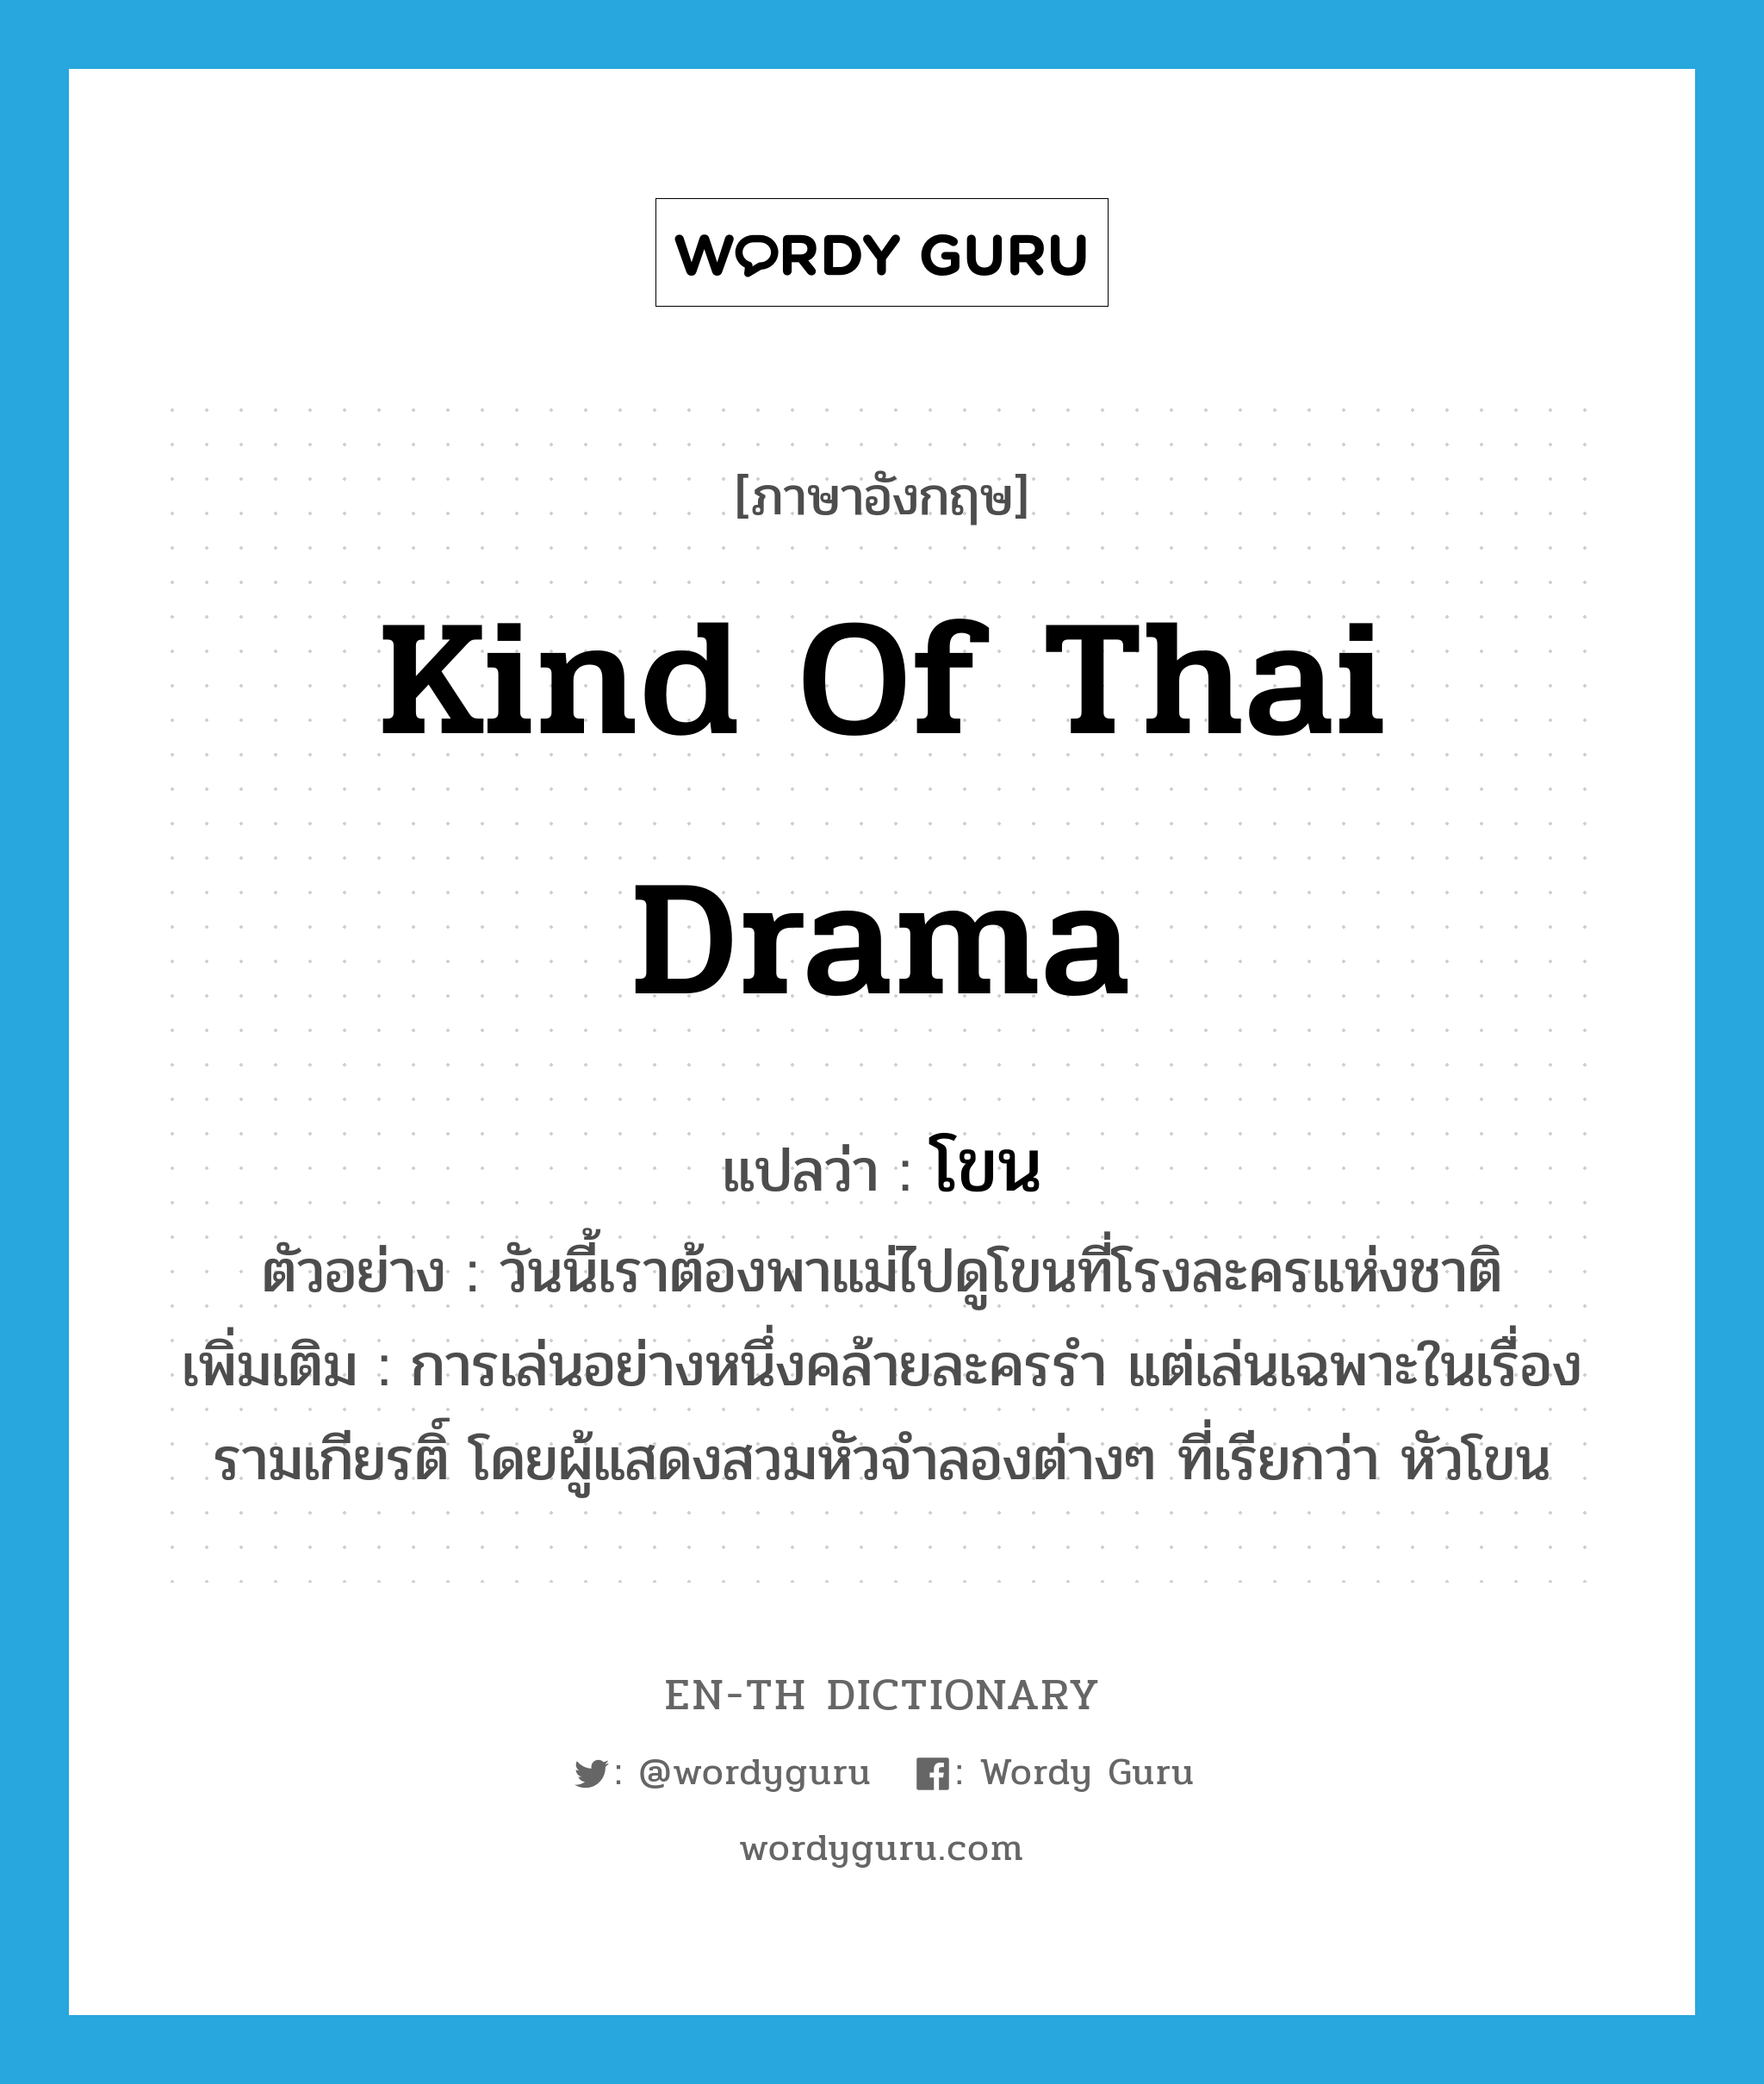 kind of Thai drama แปลว่า?, คำศัพท์ภาษาอังกฤษ kind of Thai drama แปลว่า โขน ประเภท N ตัวอย่าง วันนี้เราต้องพาแม่ไปดูโขนที่โรงละครแห่งชาติ เพิ่มเติม การเล่นอย่างหนึ่งคล้ายละครรำ แต่เล่นเฉพาะในเรื่องรามเกียรติ์ โดยผู้แสดงสวมหัวจำลองต่างๆ ที่เรียกว่า หัวโขน หมวด N